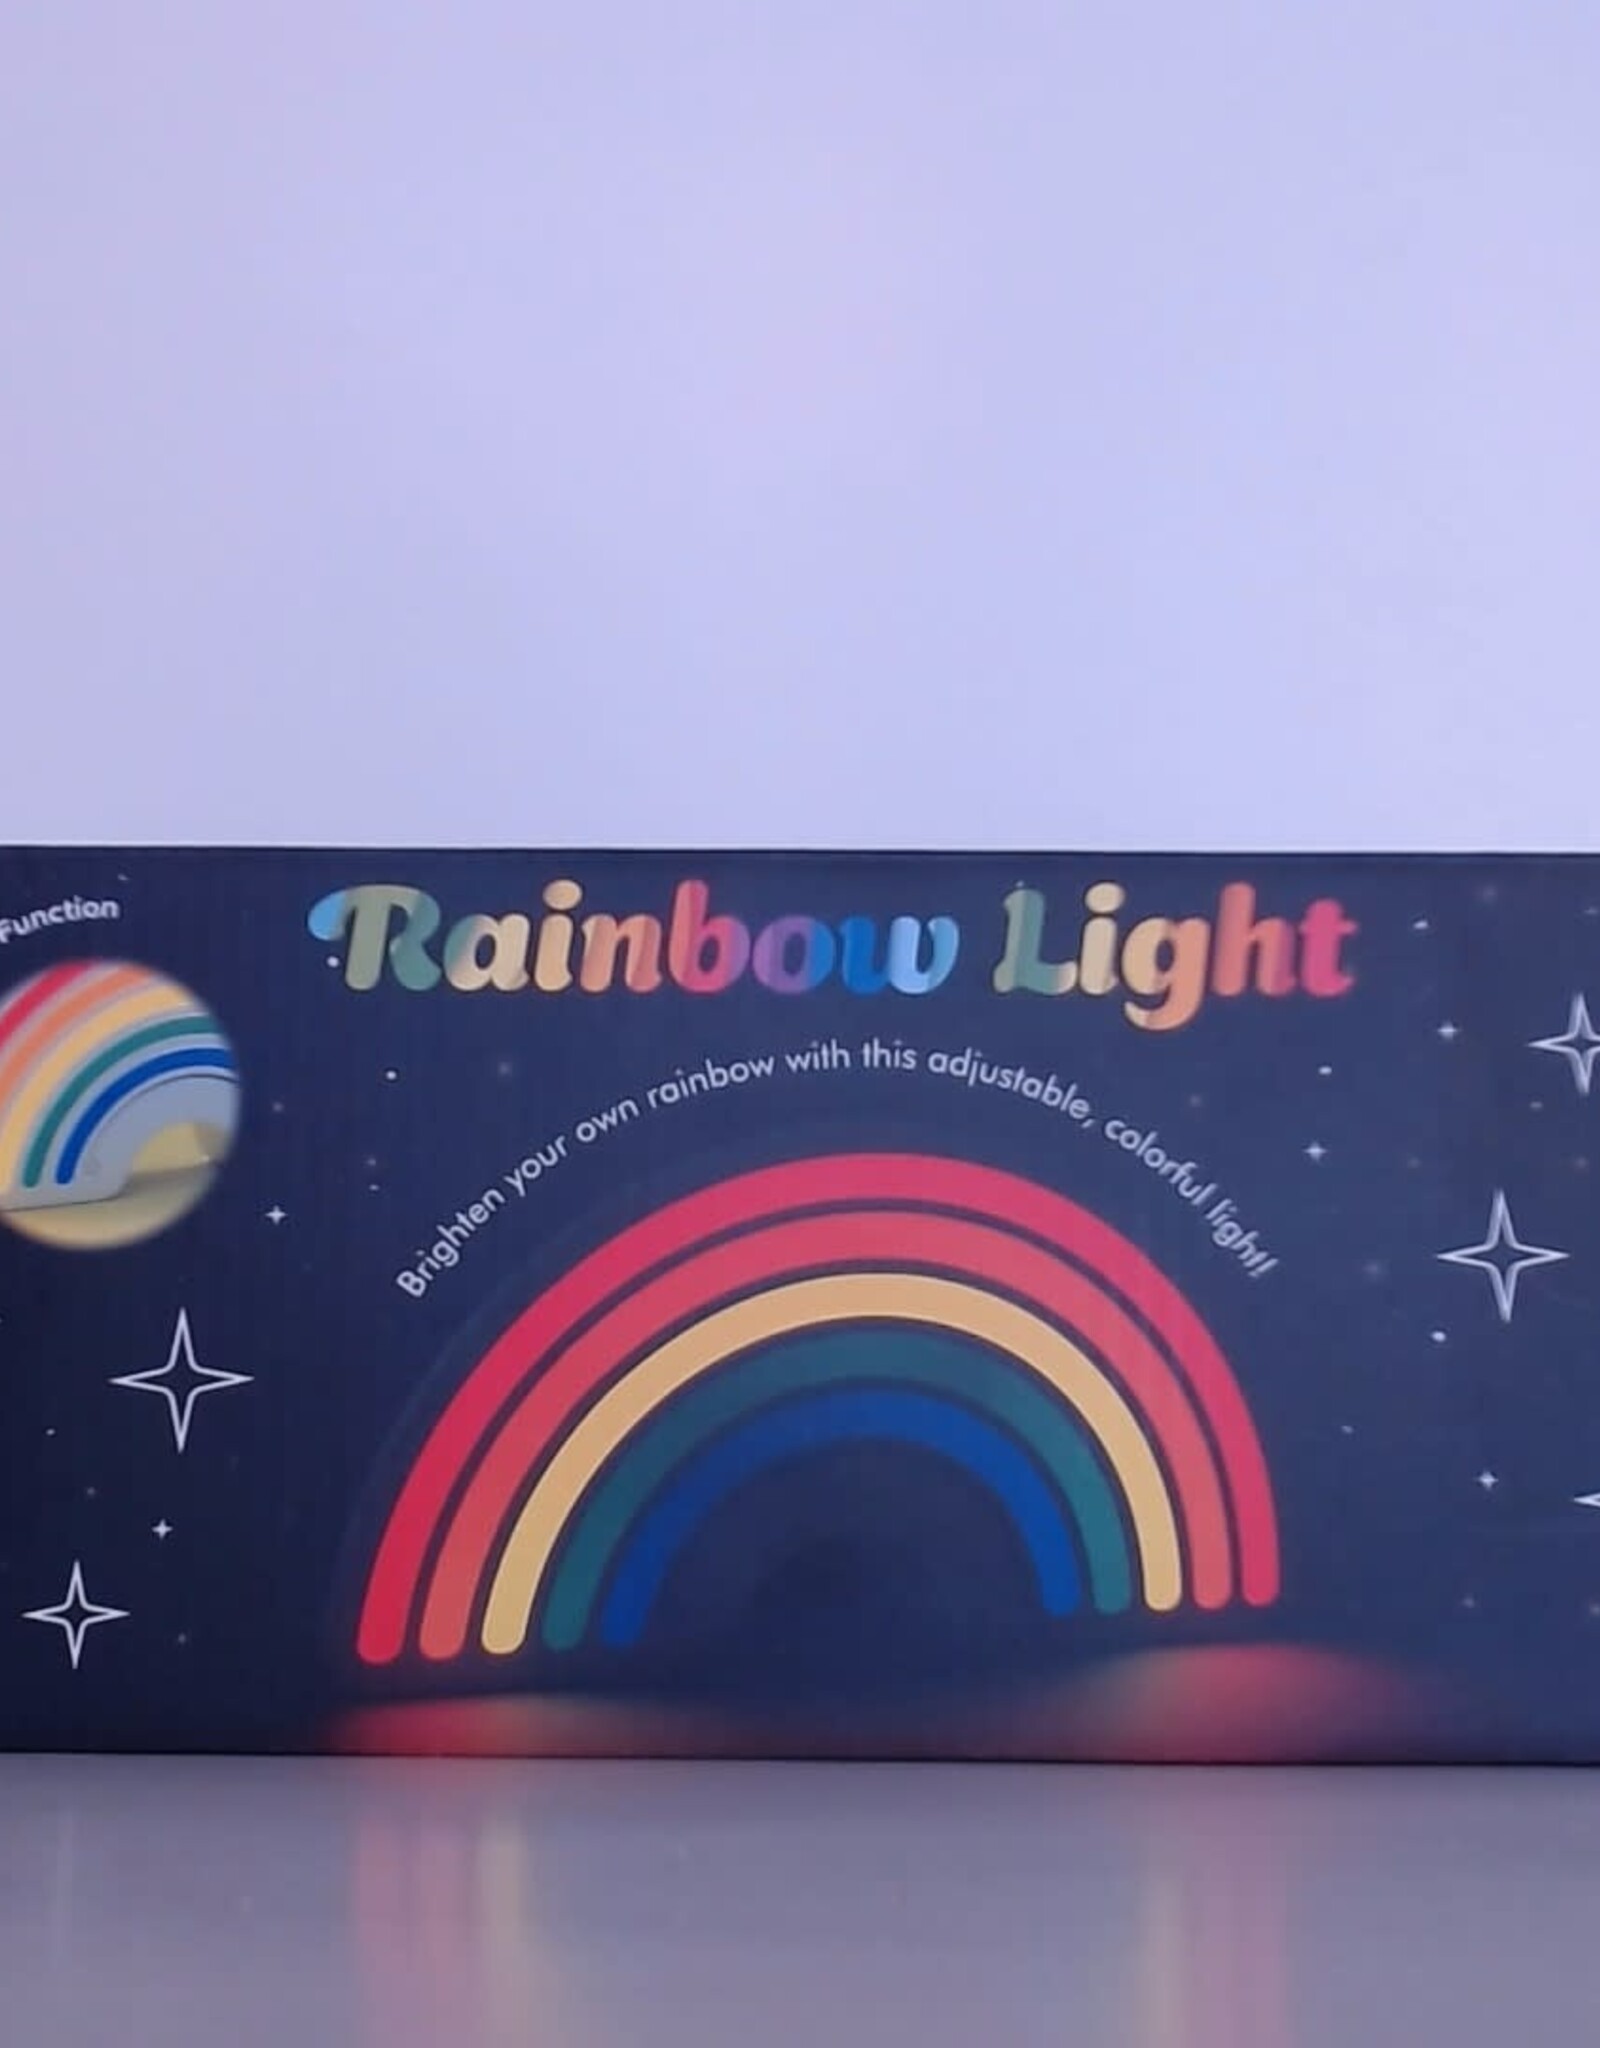 Fizz City Rainbow Dimmer Light 9"x4.5" USB Powered